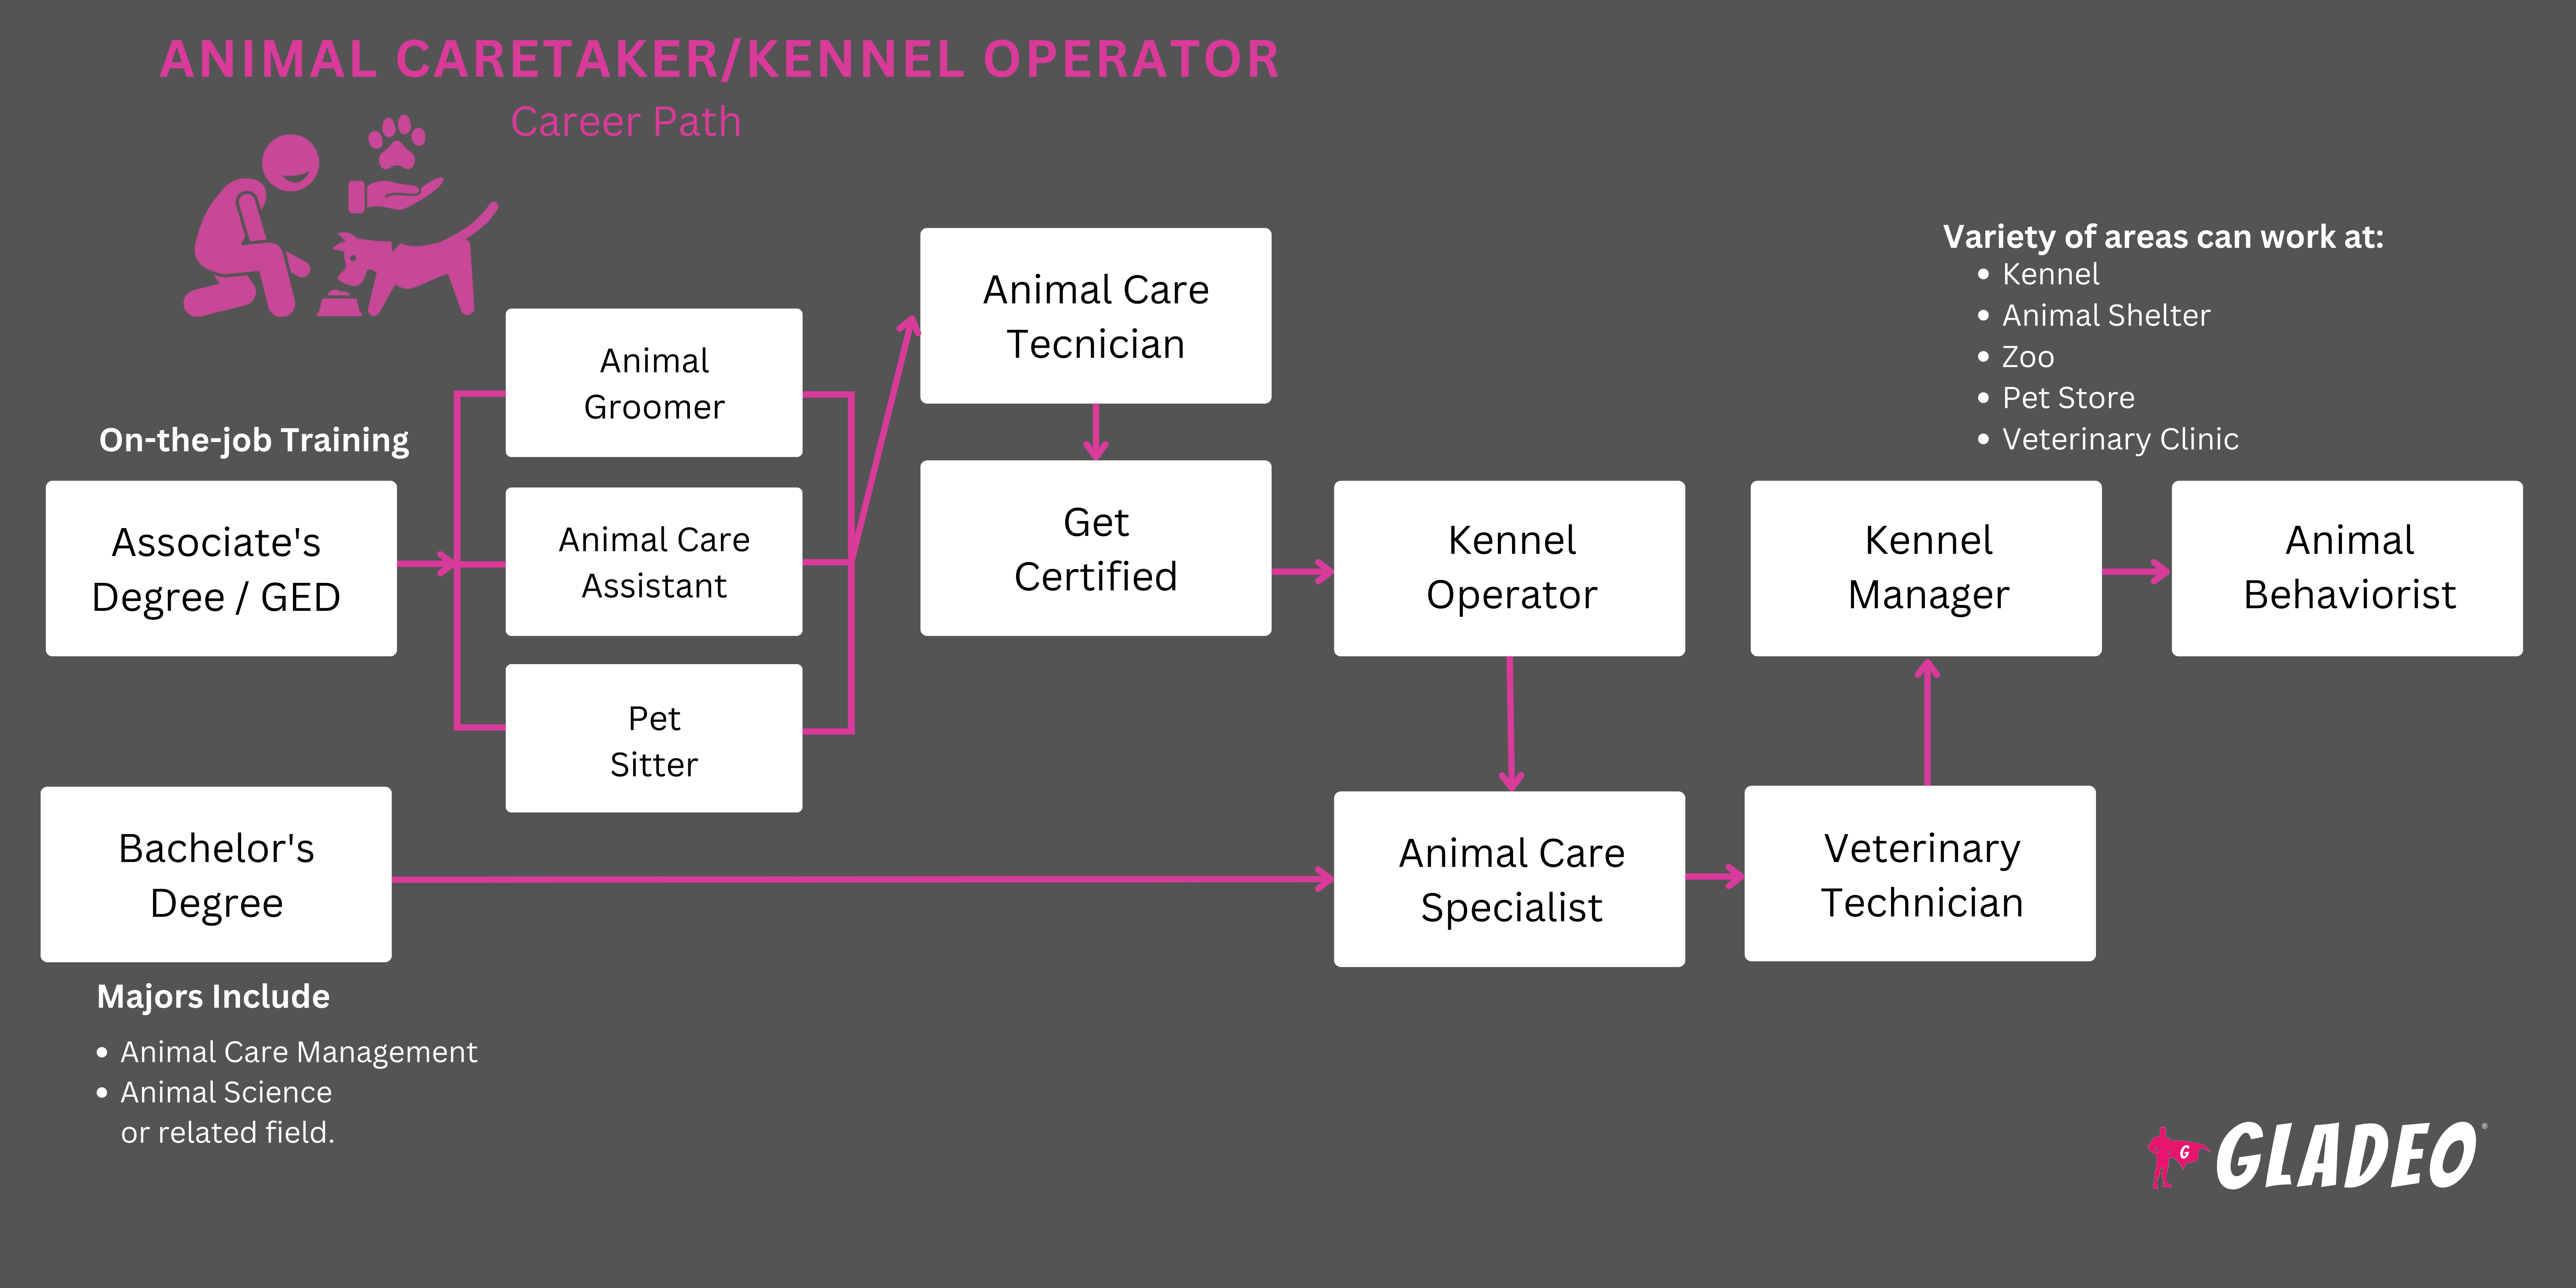 动物看护员/狗舍操作员路线图